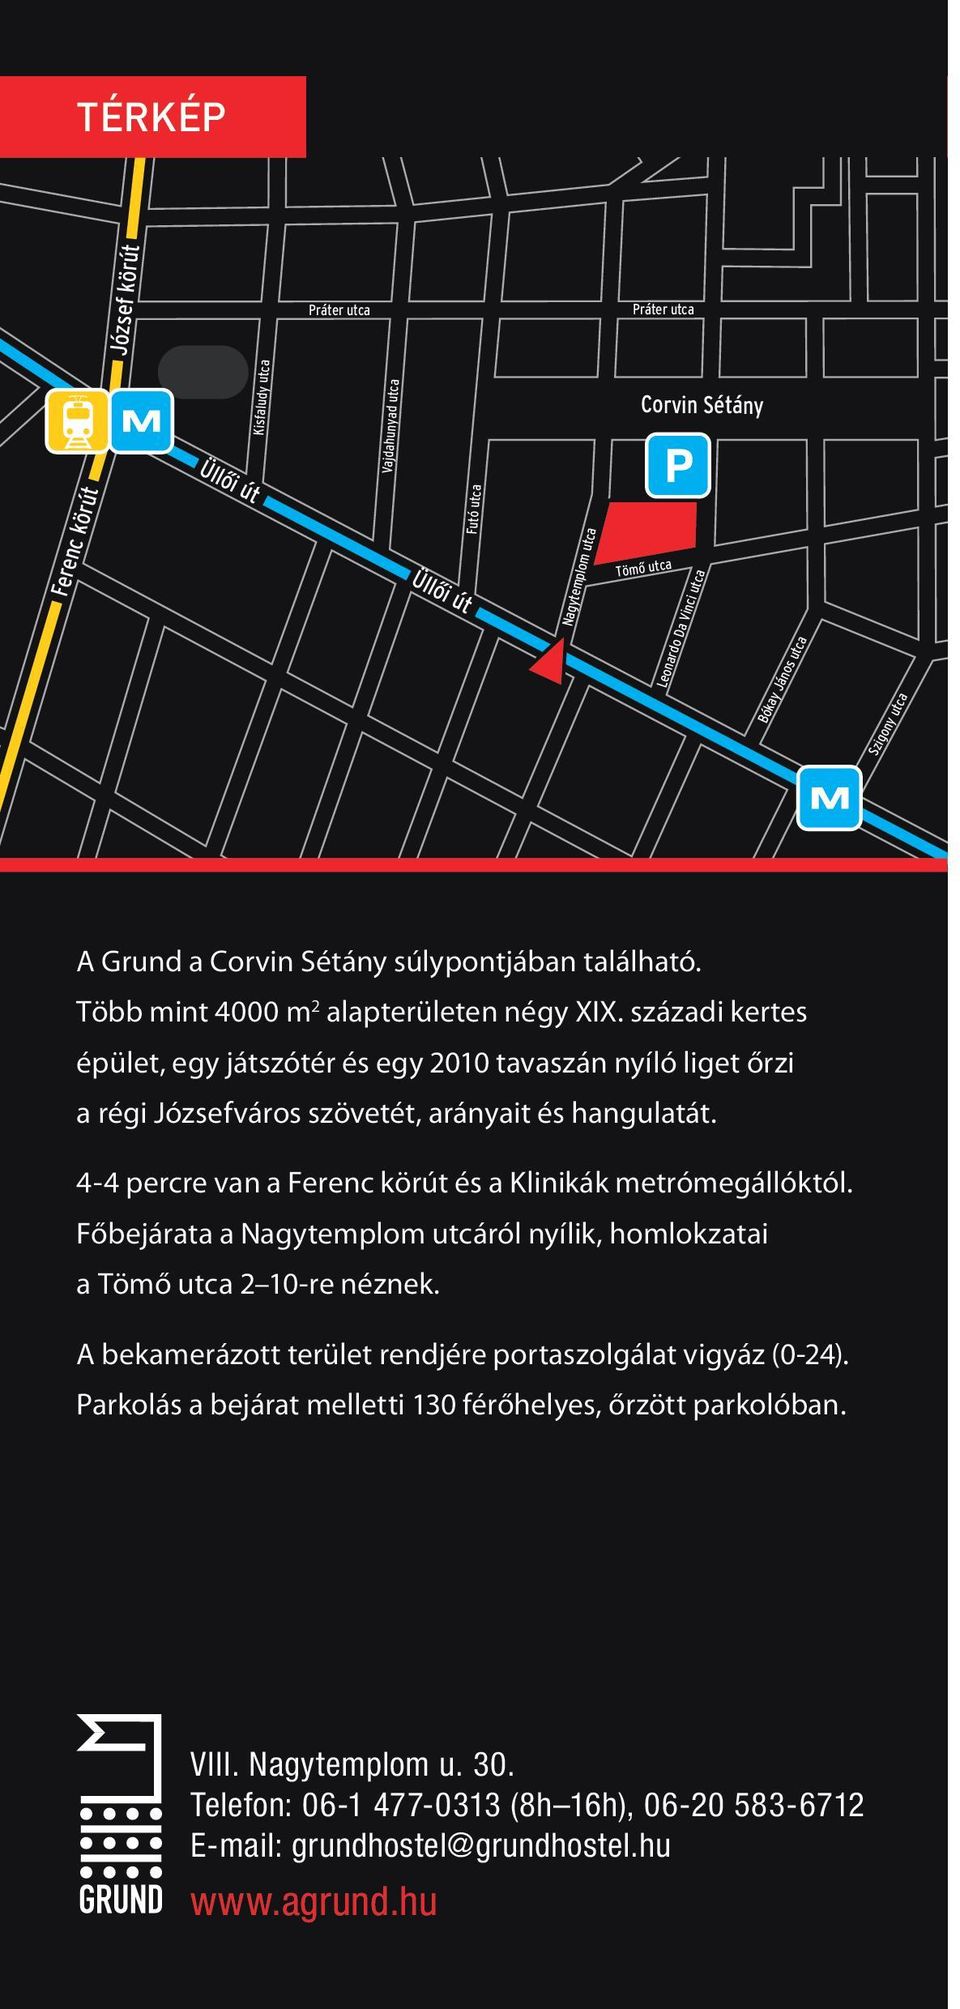 4-4 percre van a Ferenc körút és a Klinikák metrómegállóktól. Főbejárata a Nagytemplom utcáról nyílik, homlokzatai a Tömő utca 2 10-re néznek.